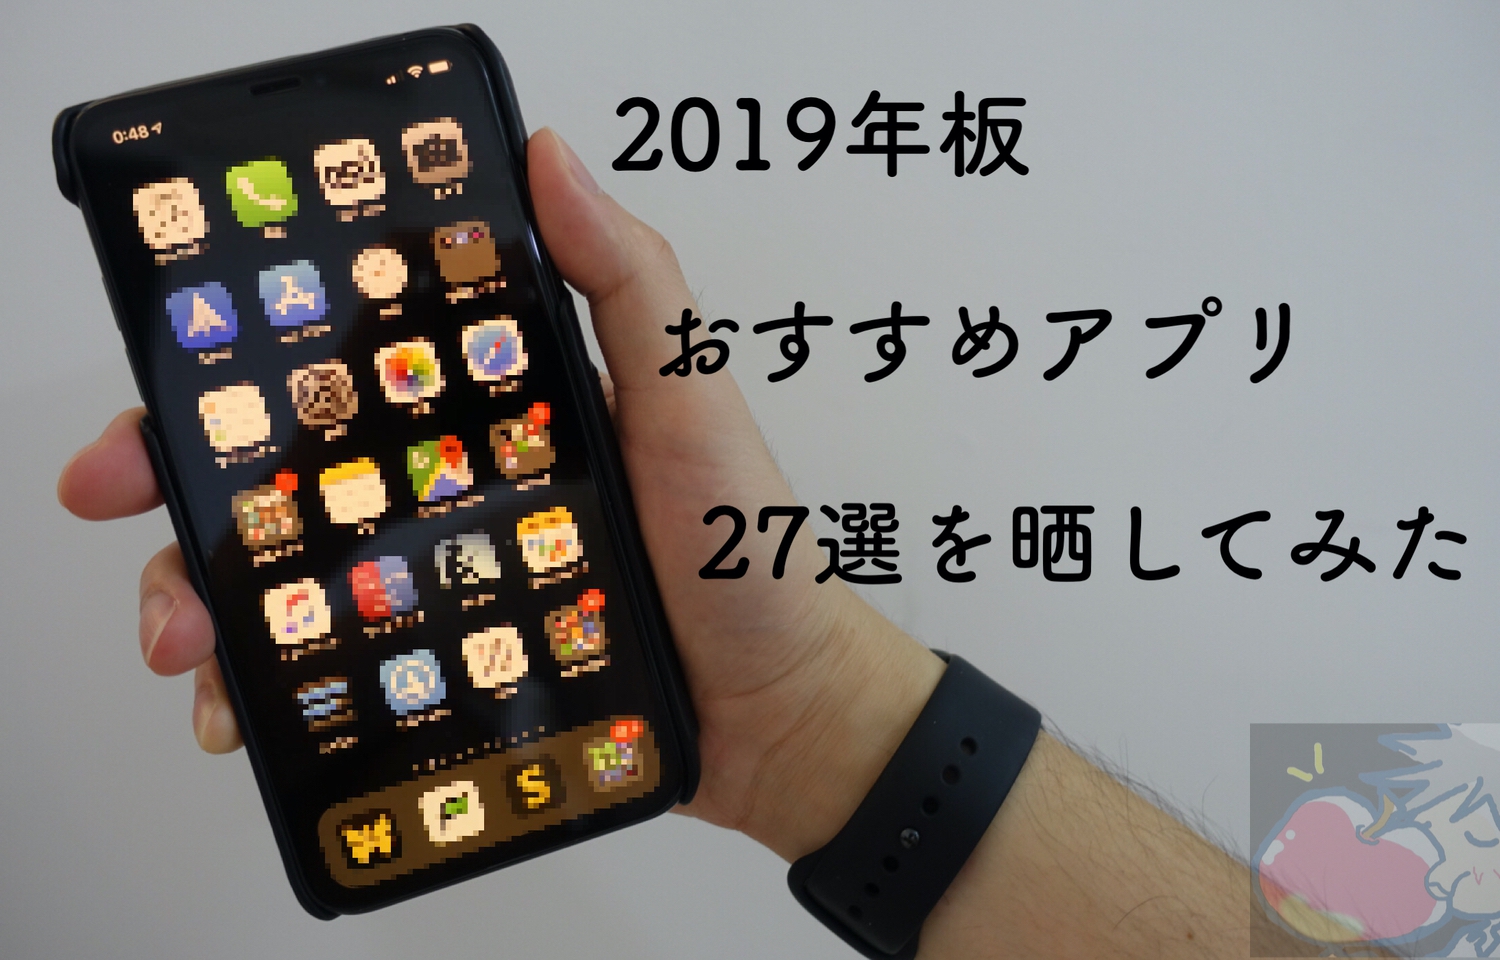 【2019】作業効率化の鬼がおすすめアプリ27選を晒してみた with iPhone XS Max